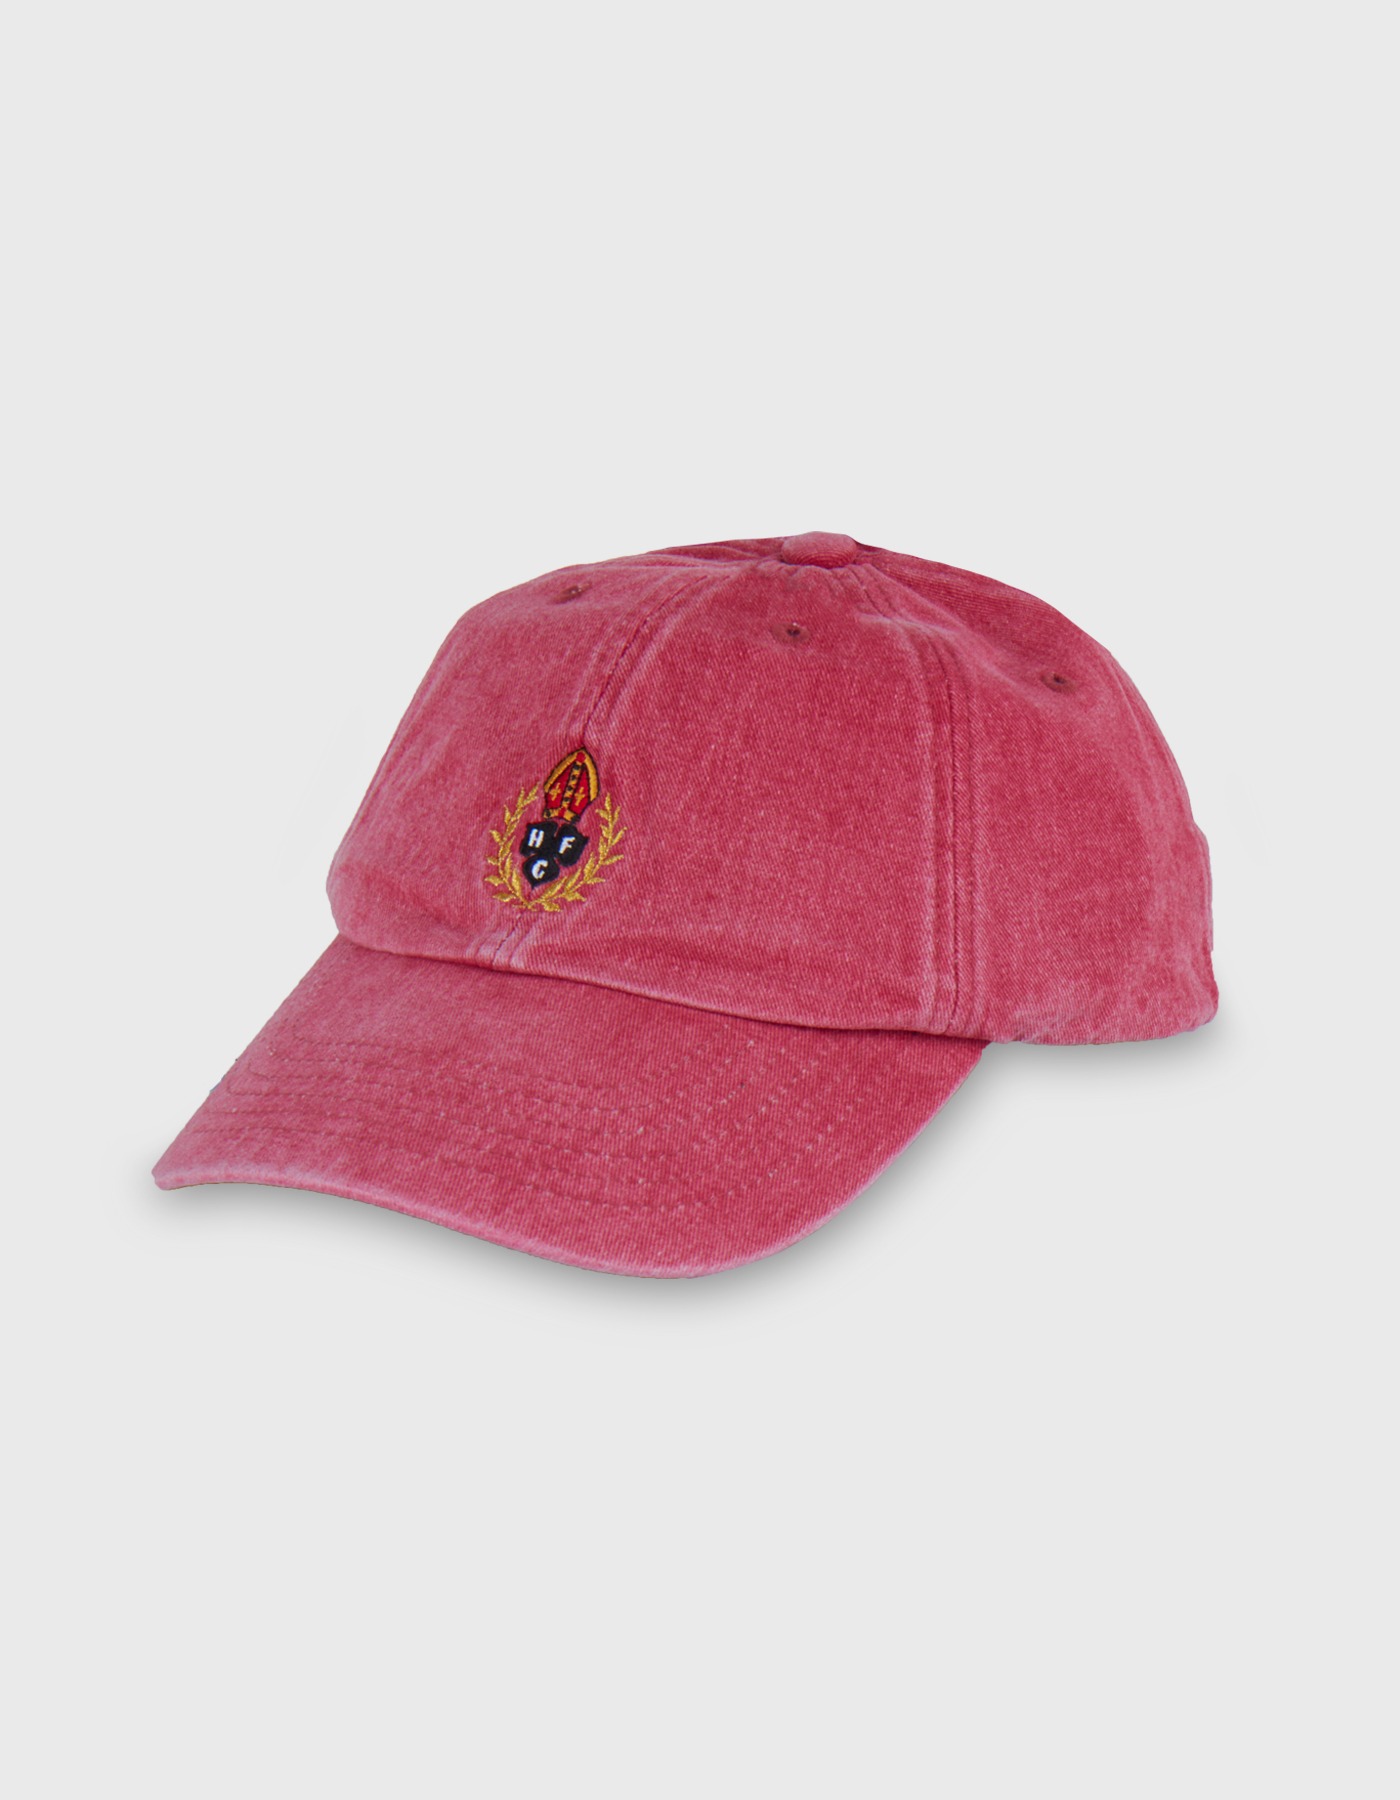 HFC CREST PIGMENT CAP / Red